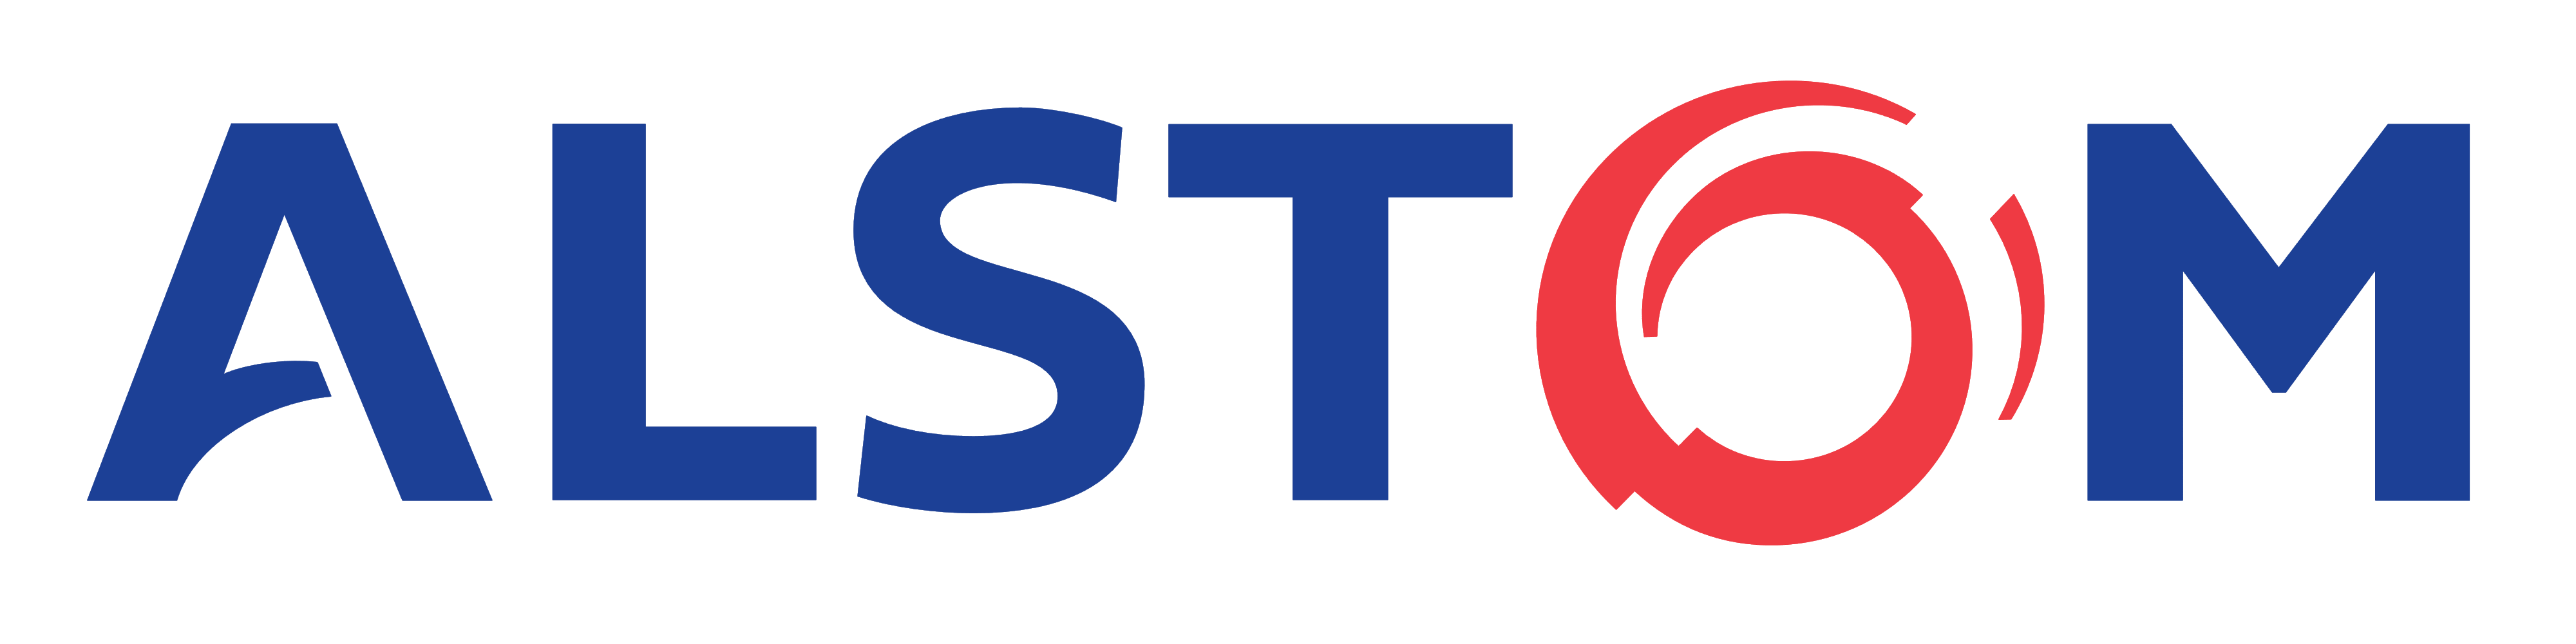 Alstom logo, logotype